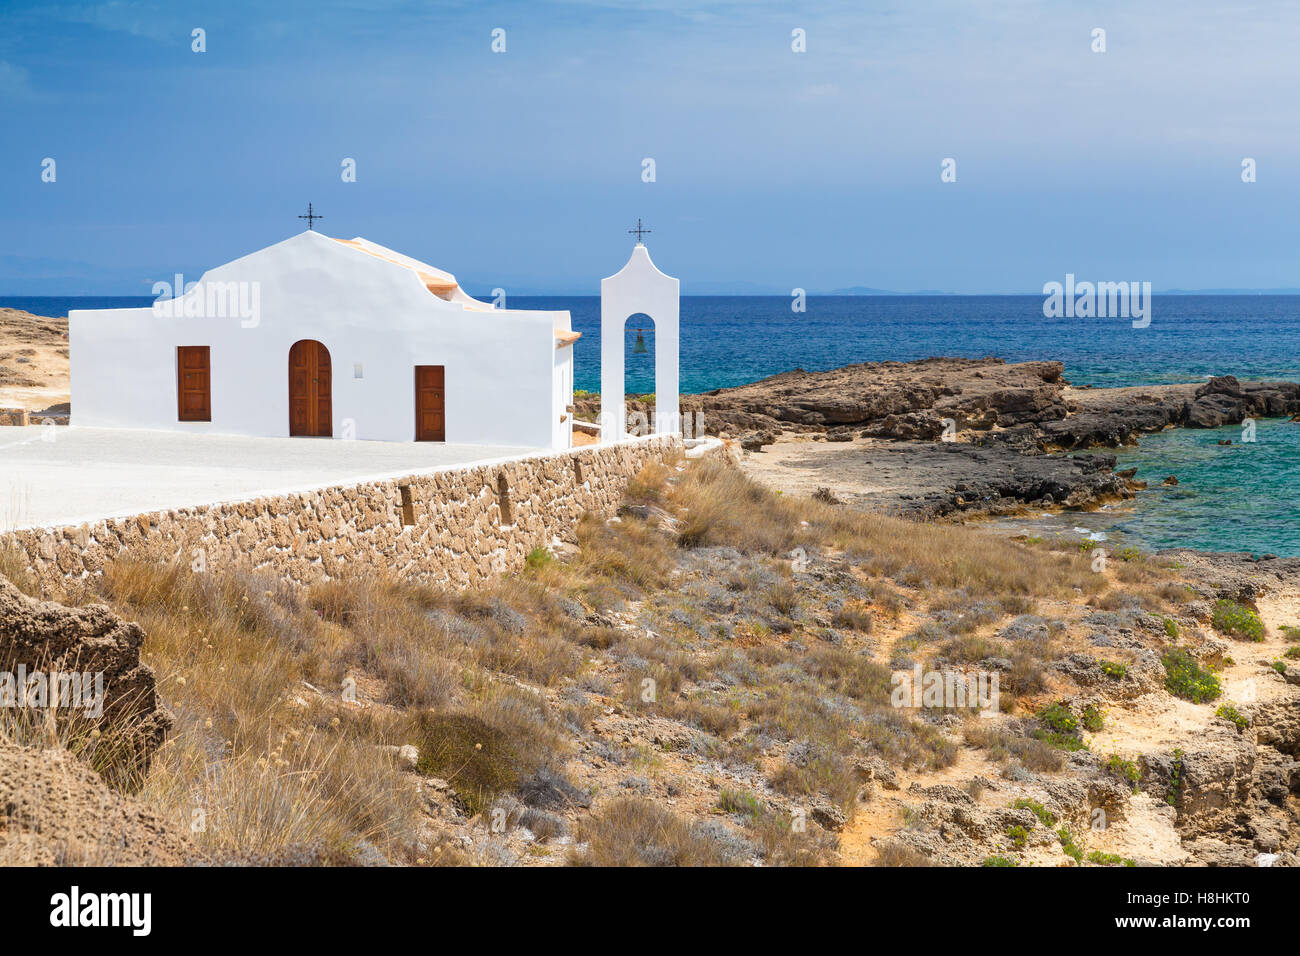 Paysage de la Côte d'Agios Nikolaos. Église orthodoxe blanc sur la côte de la mer Ionique. L'île de Zakynthos, Grèce Banque D'Images